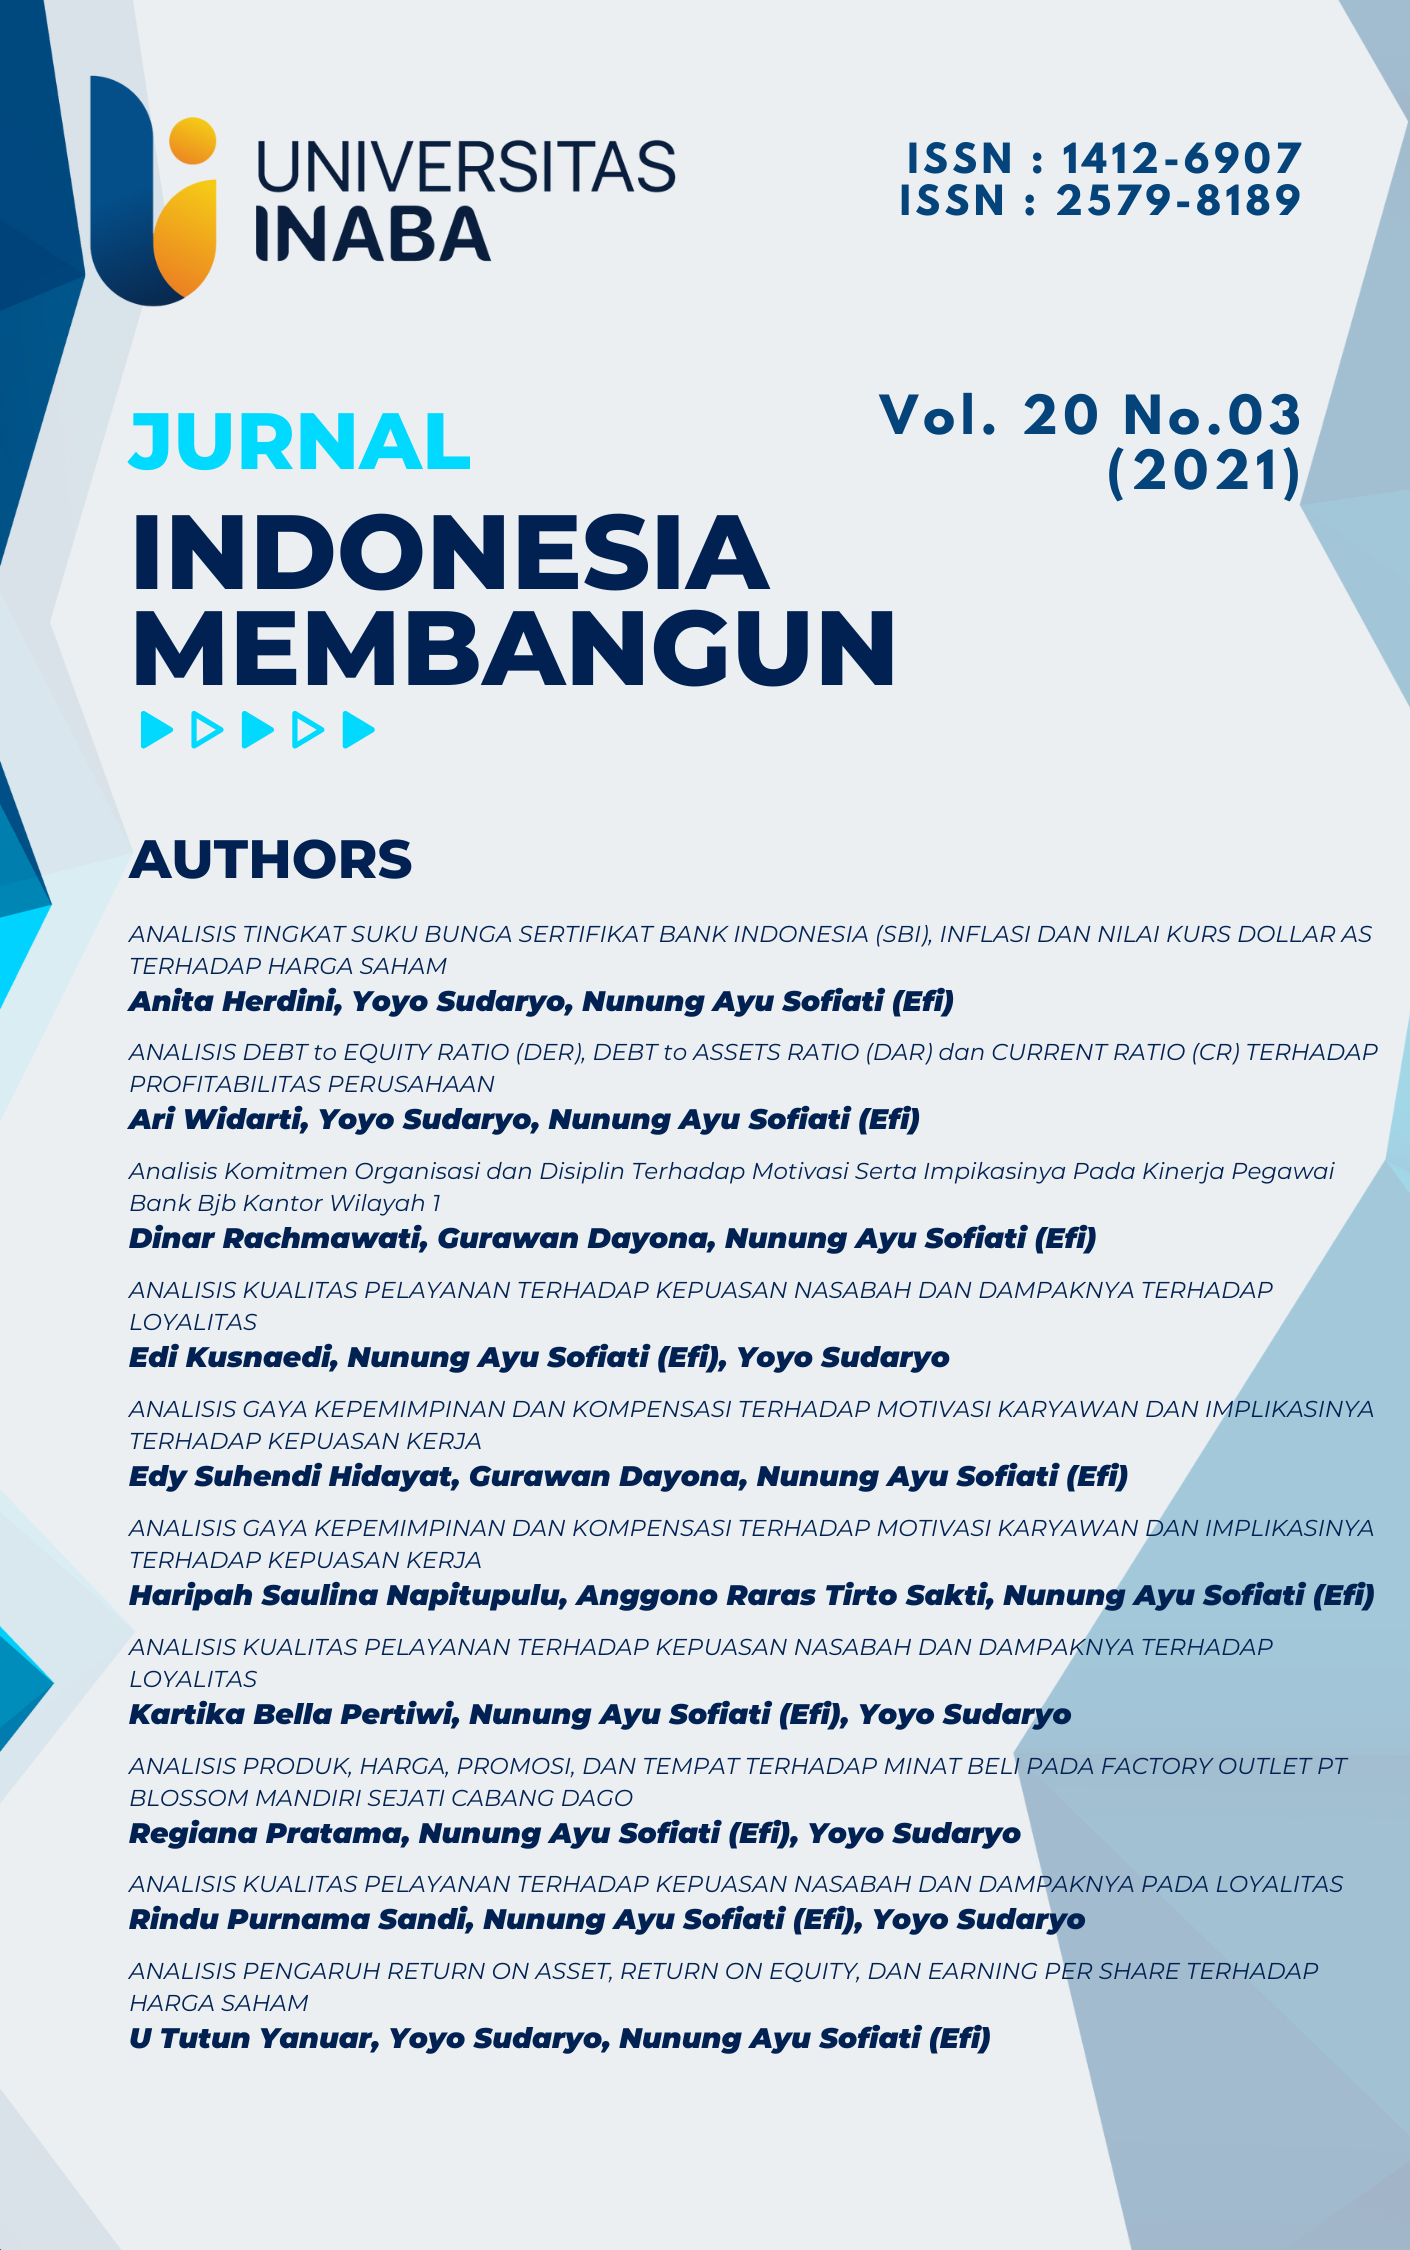 					View Vol. 20 No. 03 (2021): Jurnal Indonesia Membangun
				